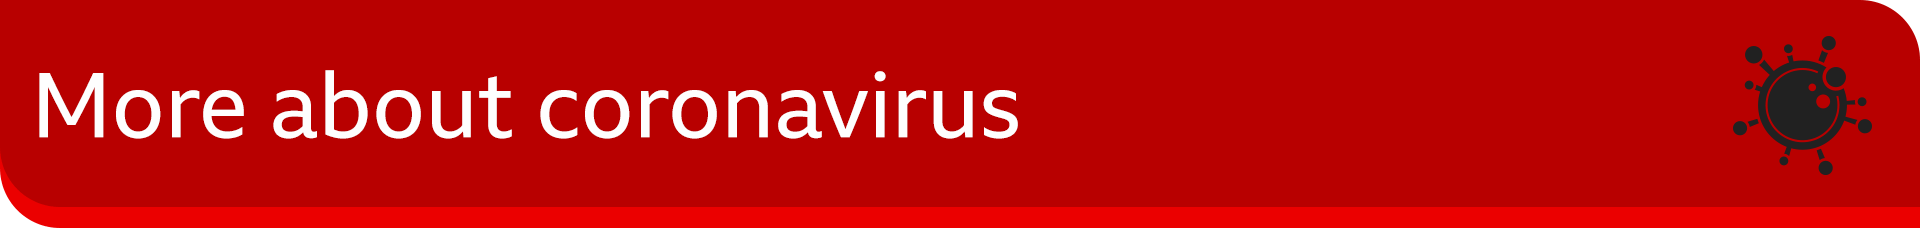 Bannerafbeelding met de tekst 'meer over coronavirus''more about coronavirus'